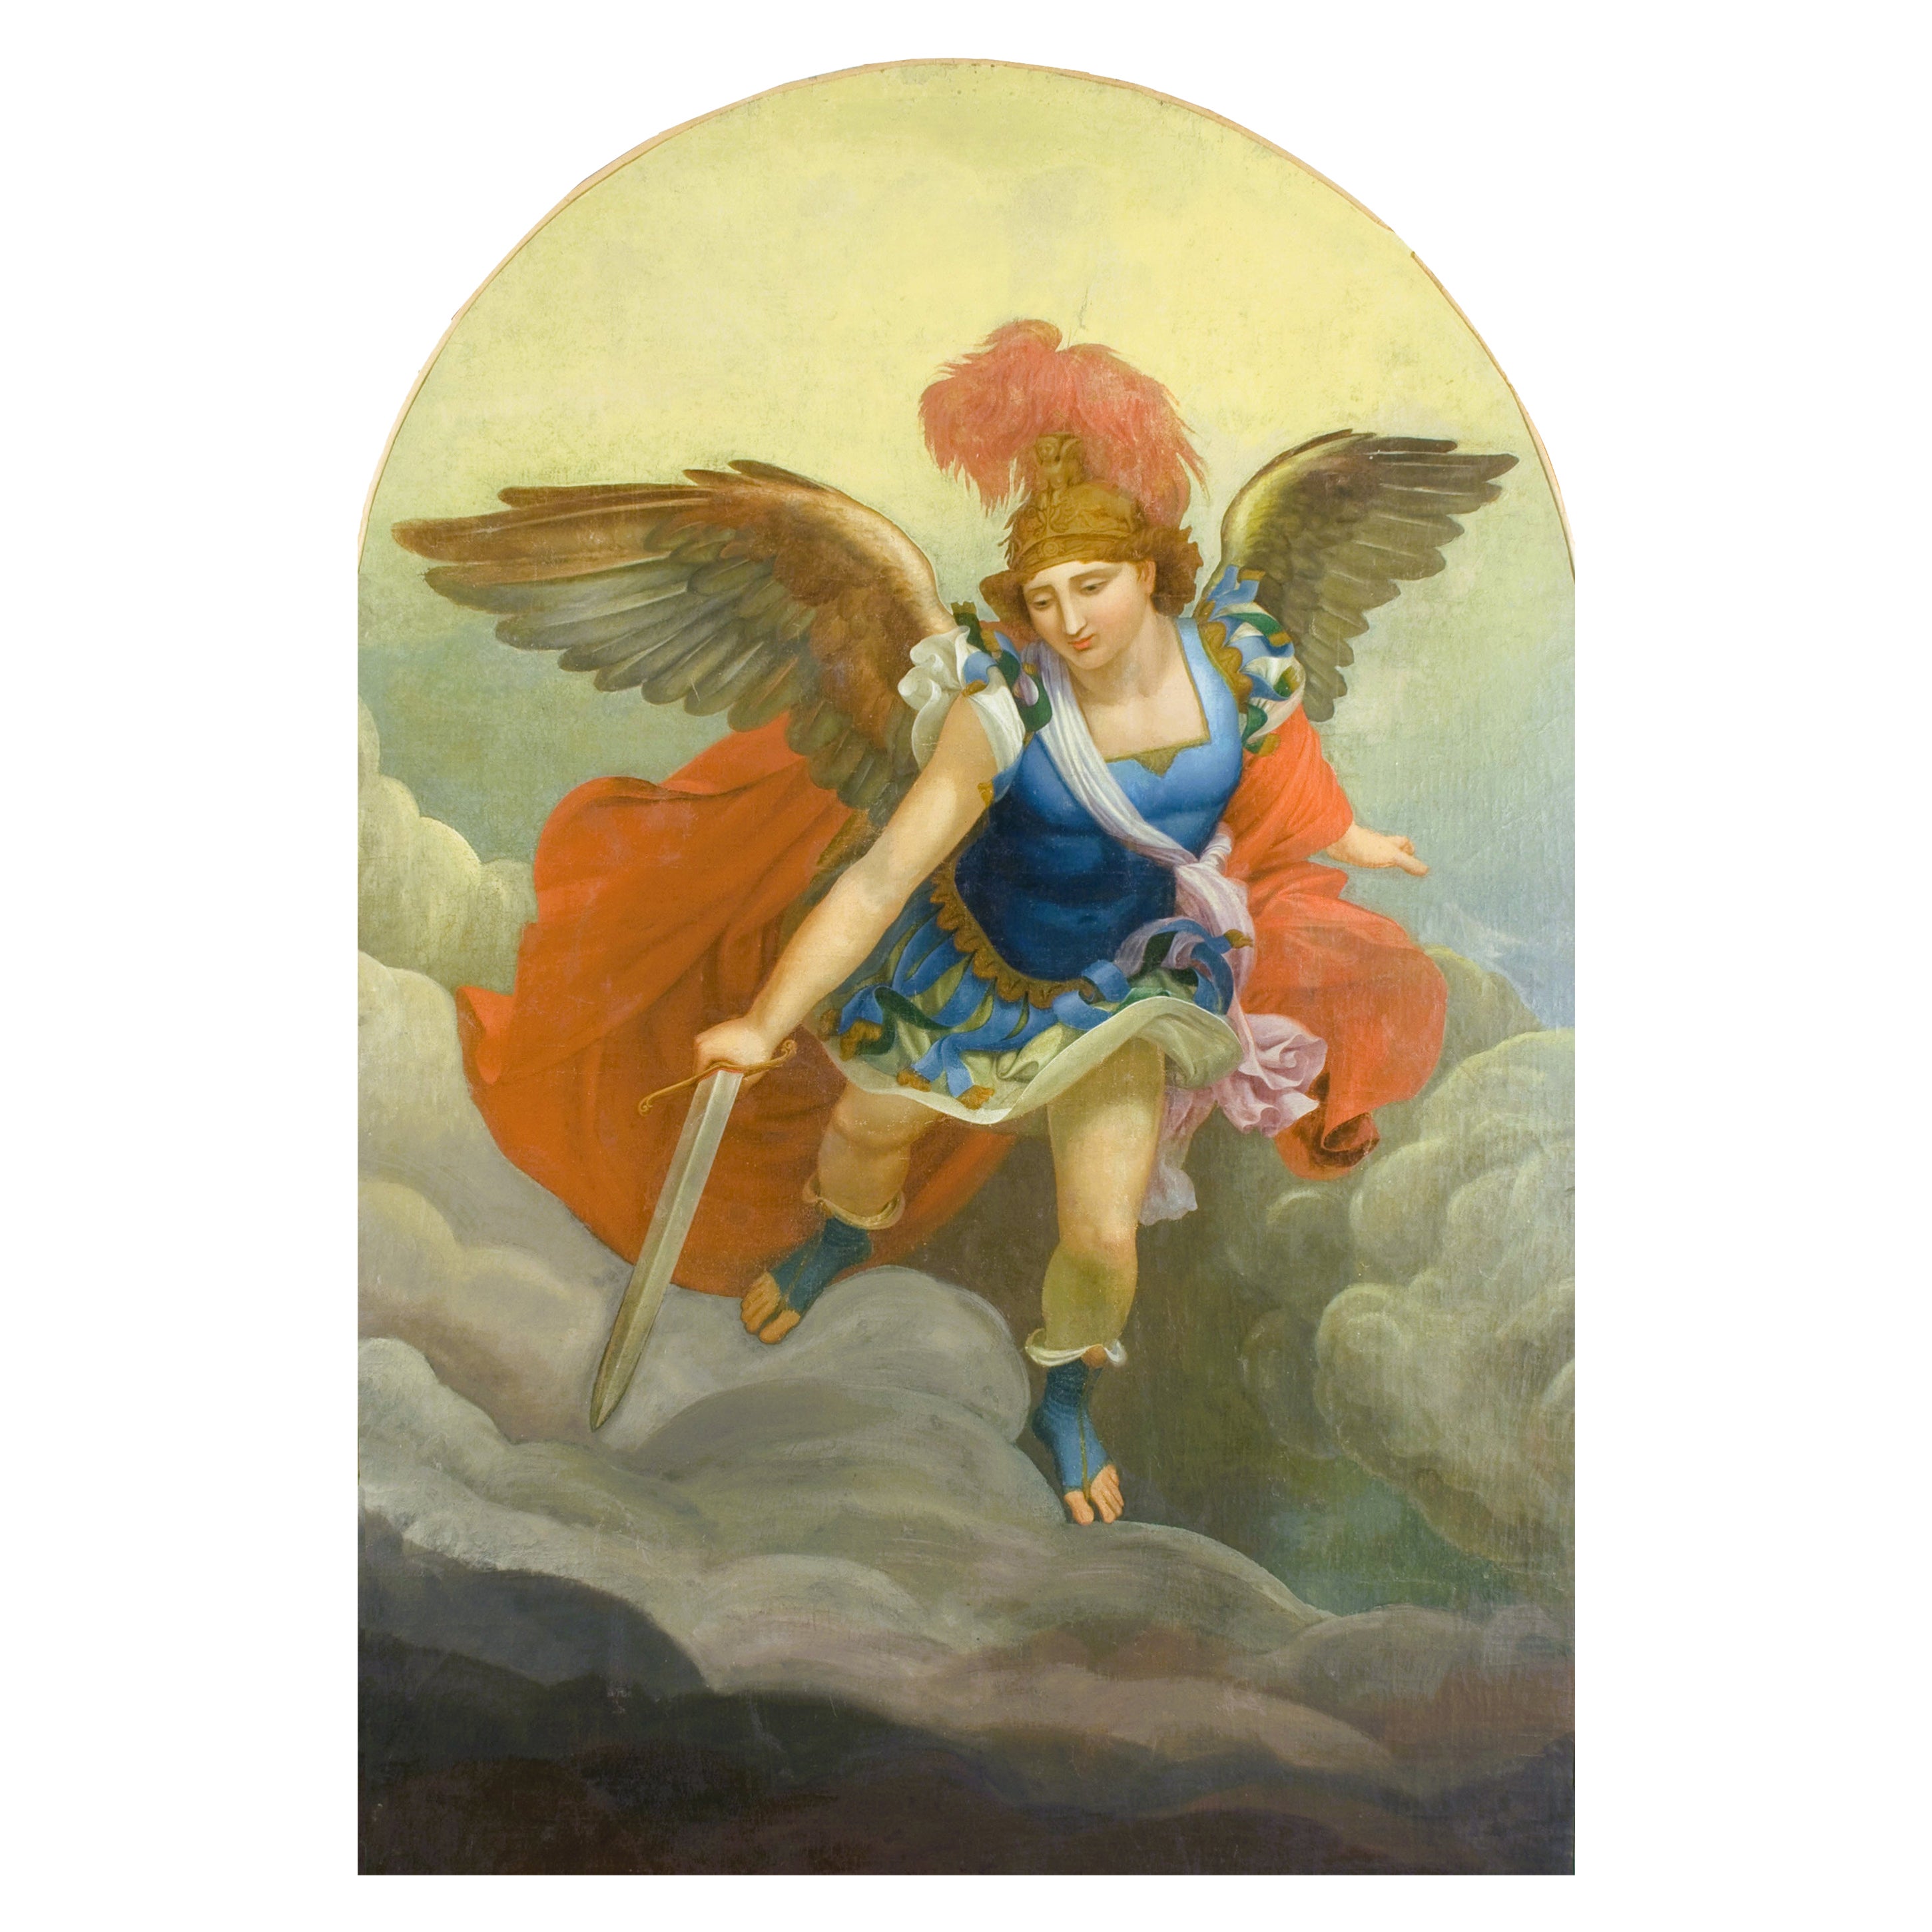 Großes Gemälde des neoklassizistischen Malers Saint Michael des Archangels aus dem 19. Jahrhundert